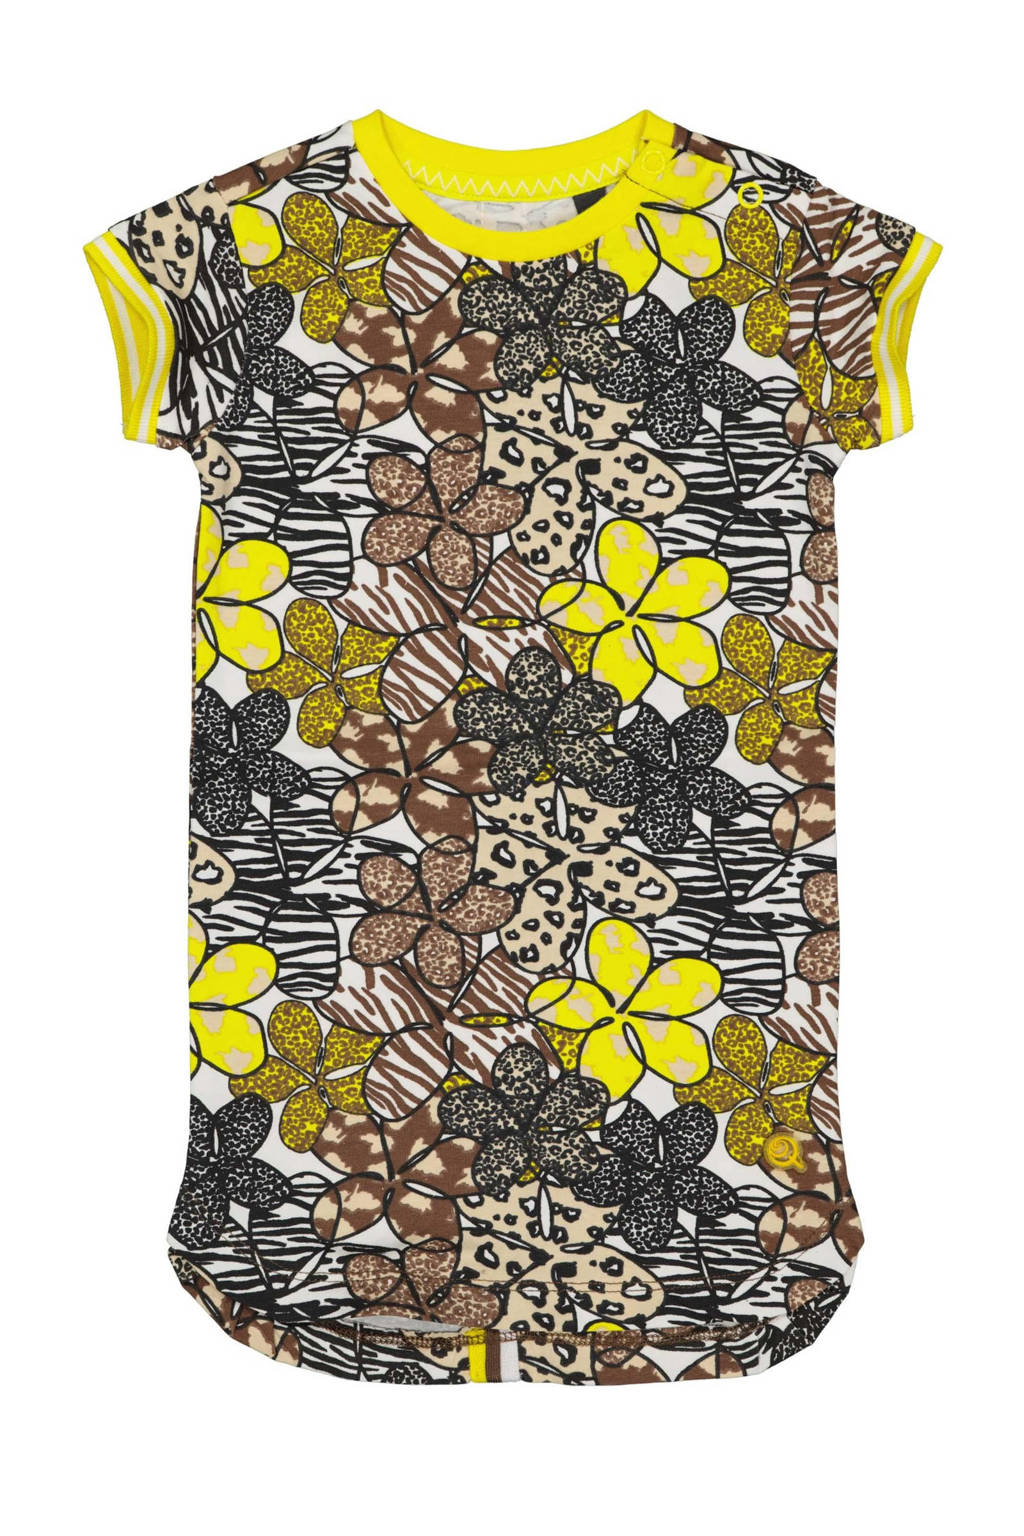 Quapi Mini gebloemde T-shirtjurk Nada met contrastbies zand/geel